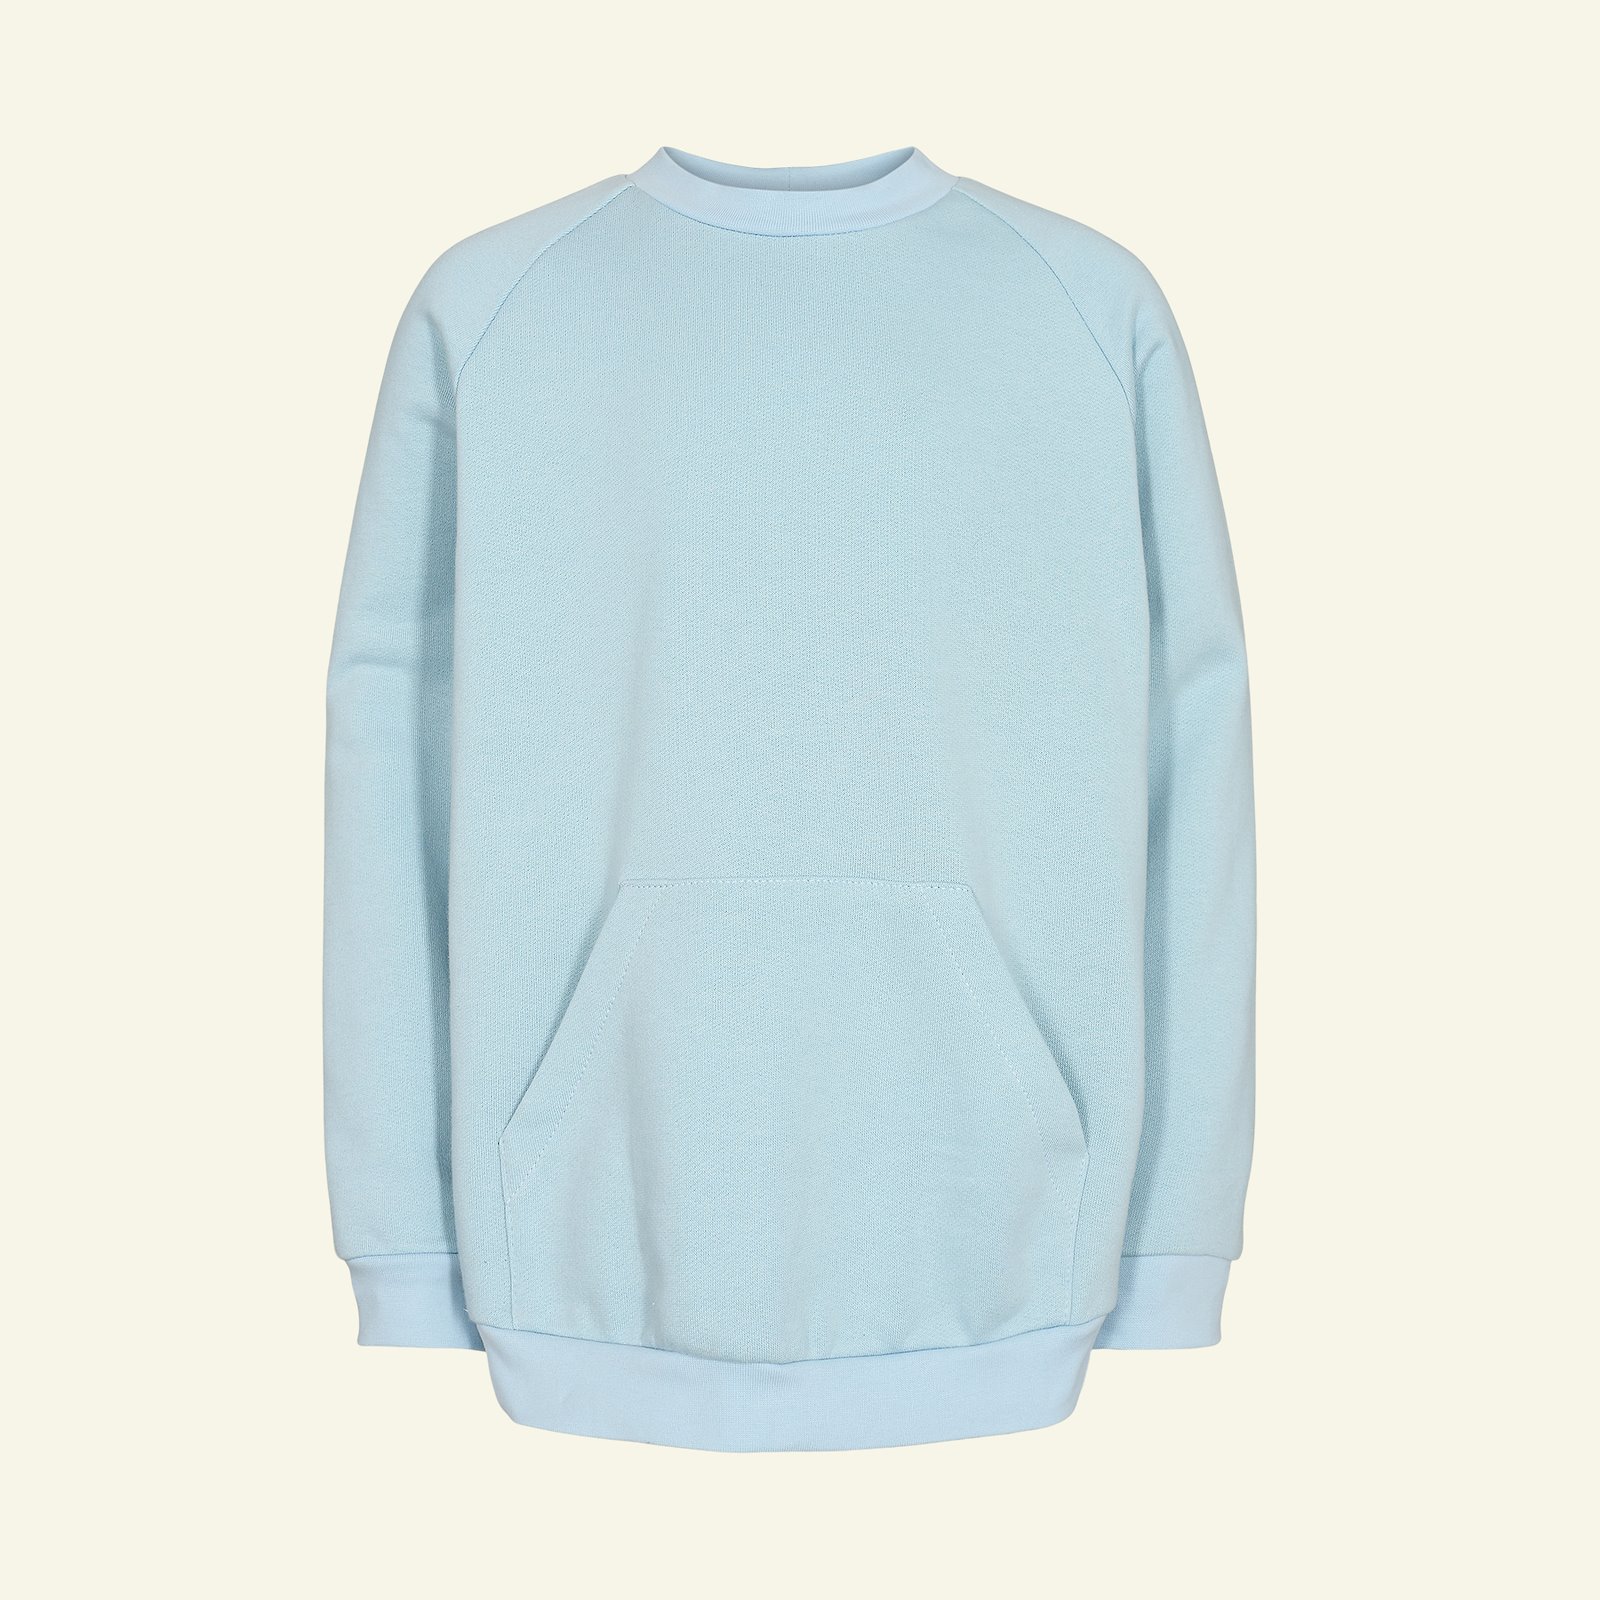 Sweatshirt with raglan sleeves, 116/6y p62015_211777_230601_sskit